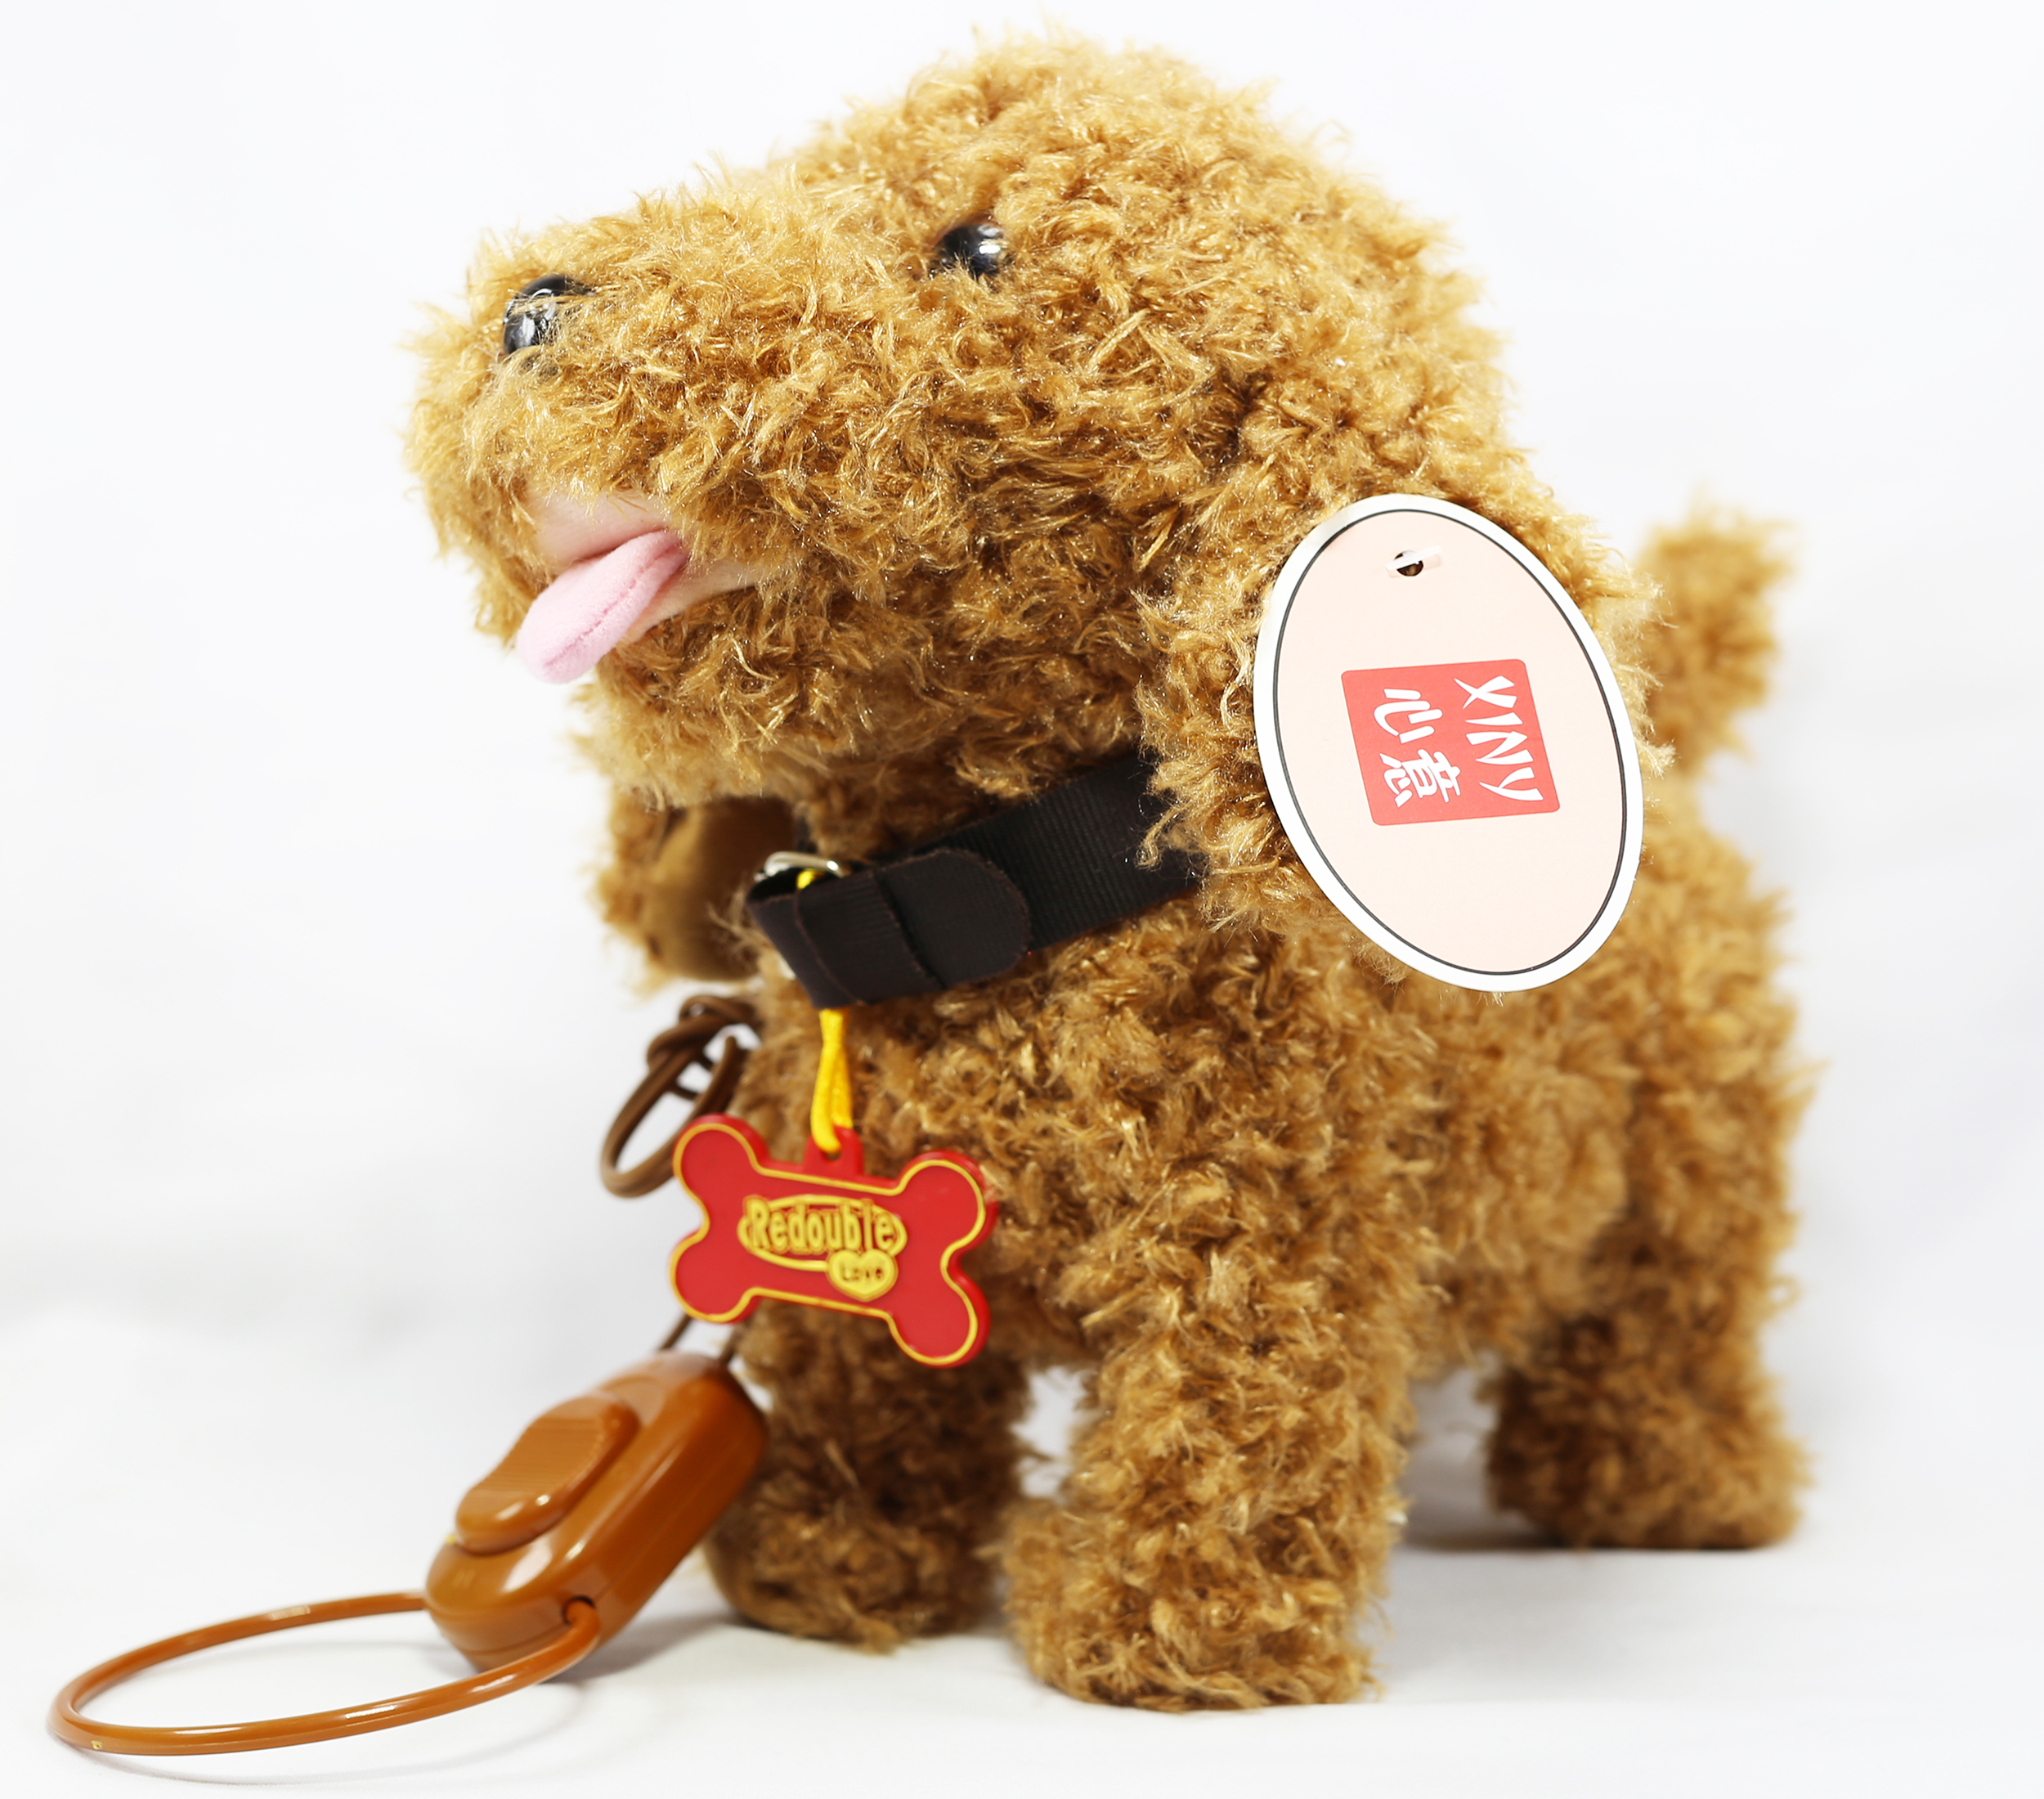 Perro interactivo de juguete camina y ladra 1695-5 - Xiny de